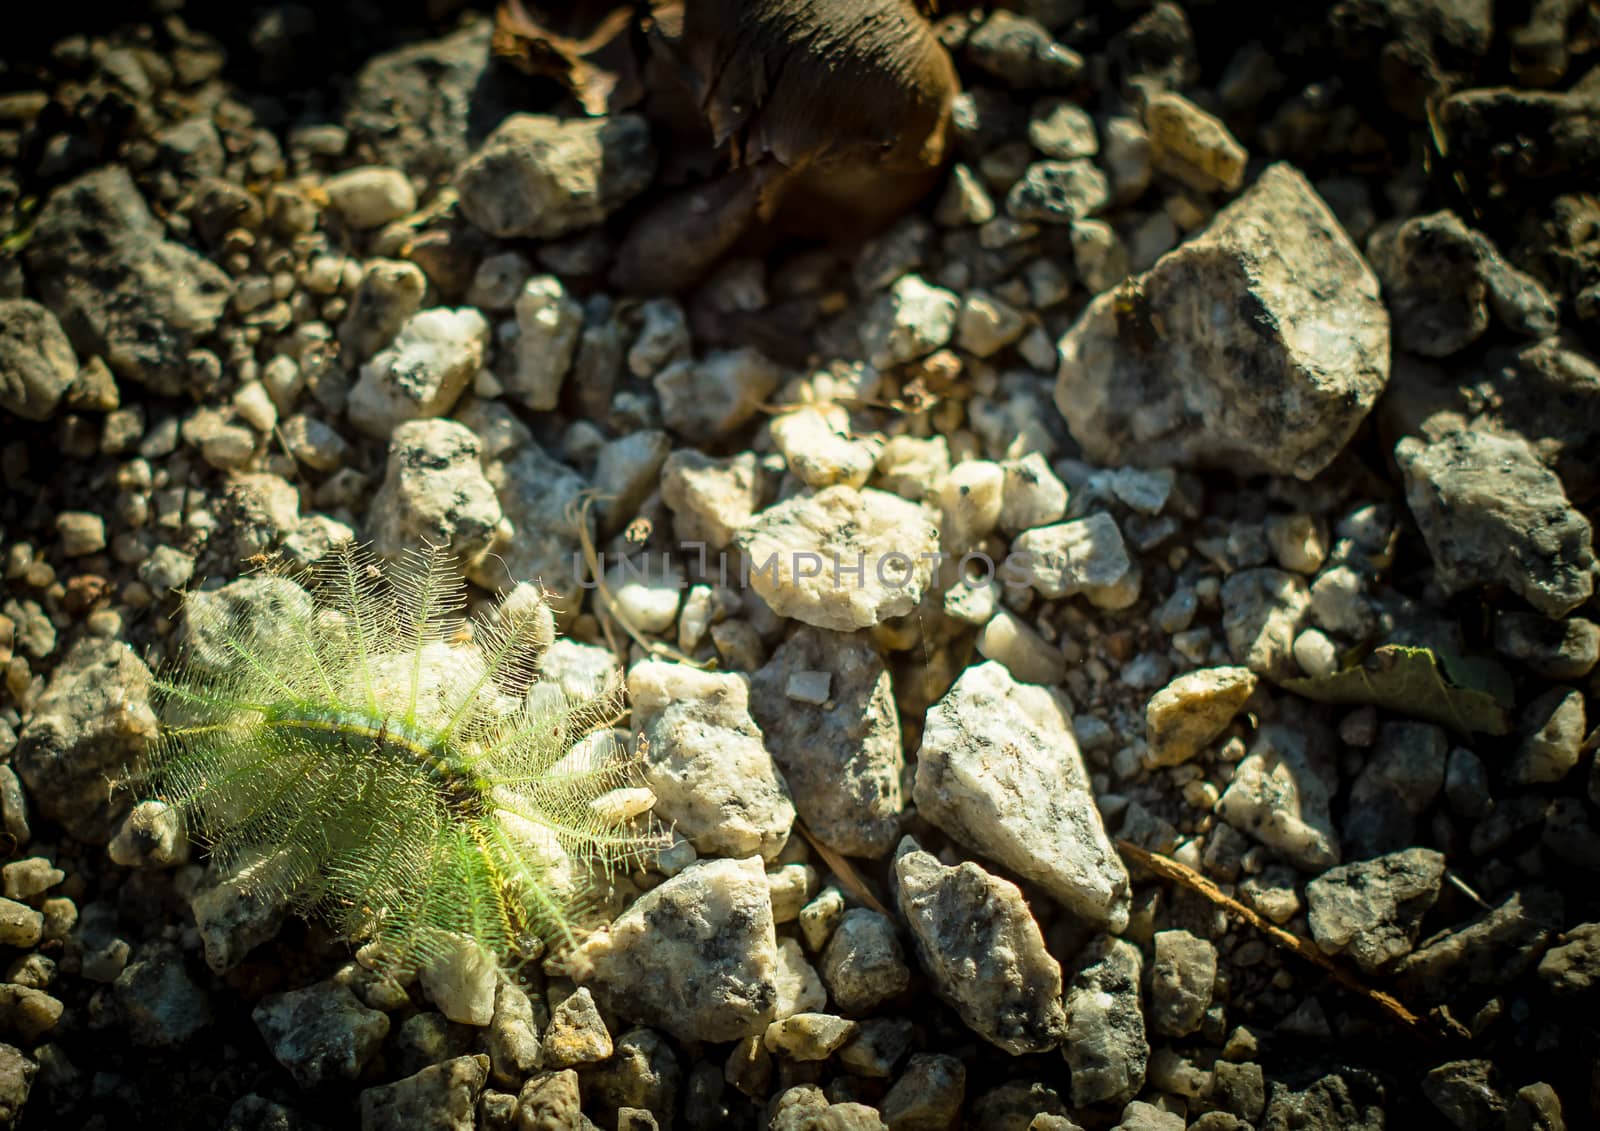 Nettle Caterpillar on the rock